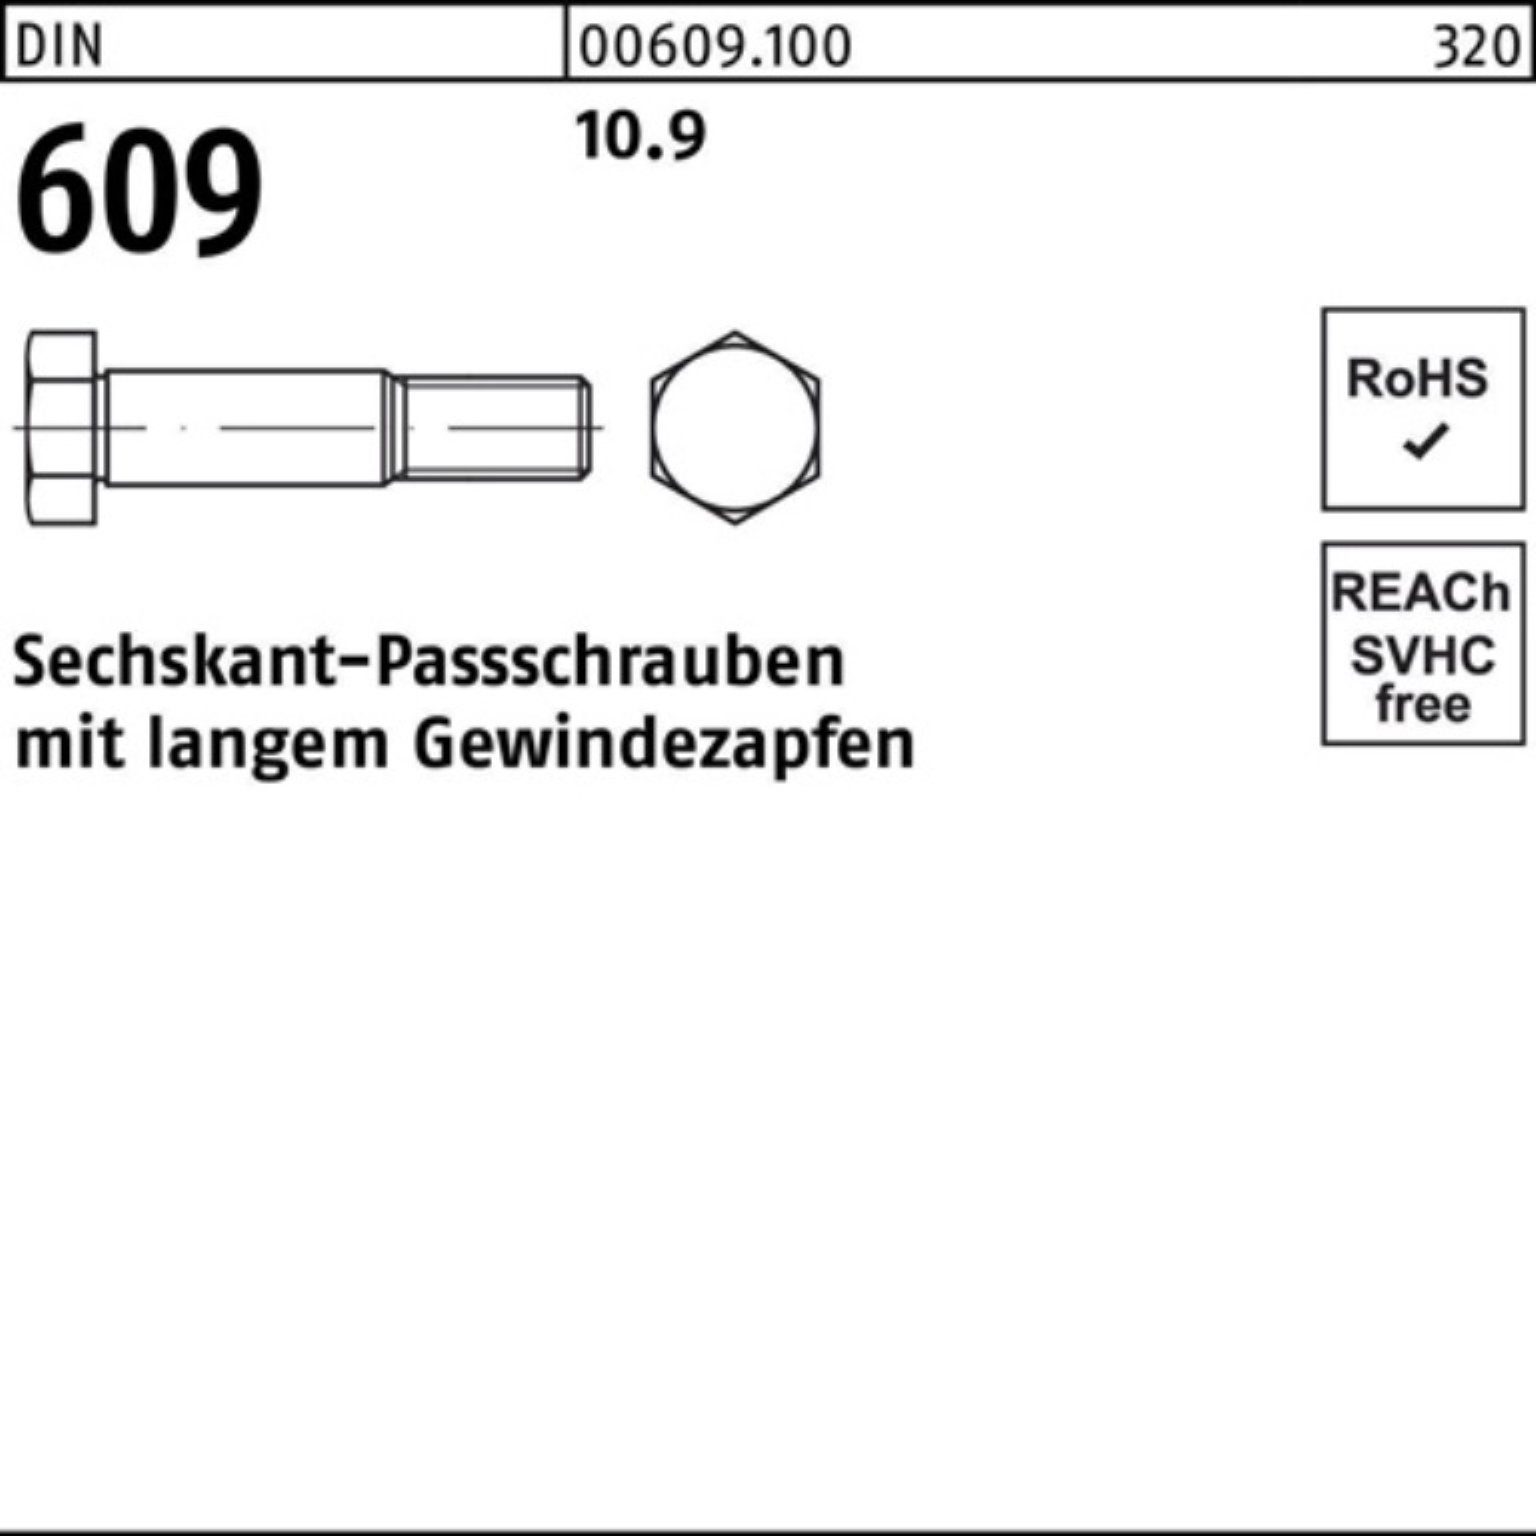 Pack 609 Reyher Sechskantpassschraube 60 Schraube DIN langem Gewindezapfen 100er M24x